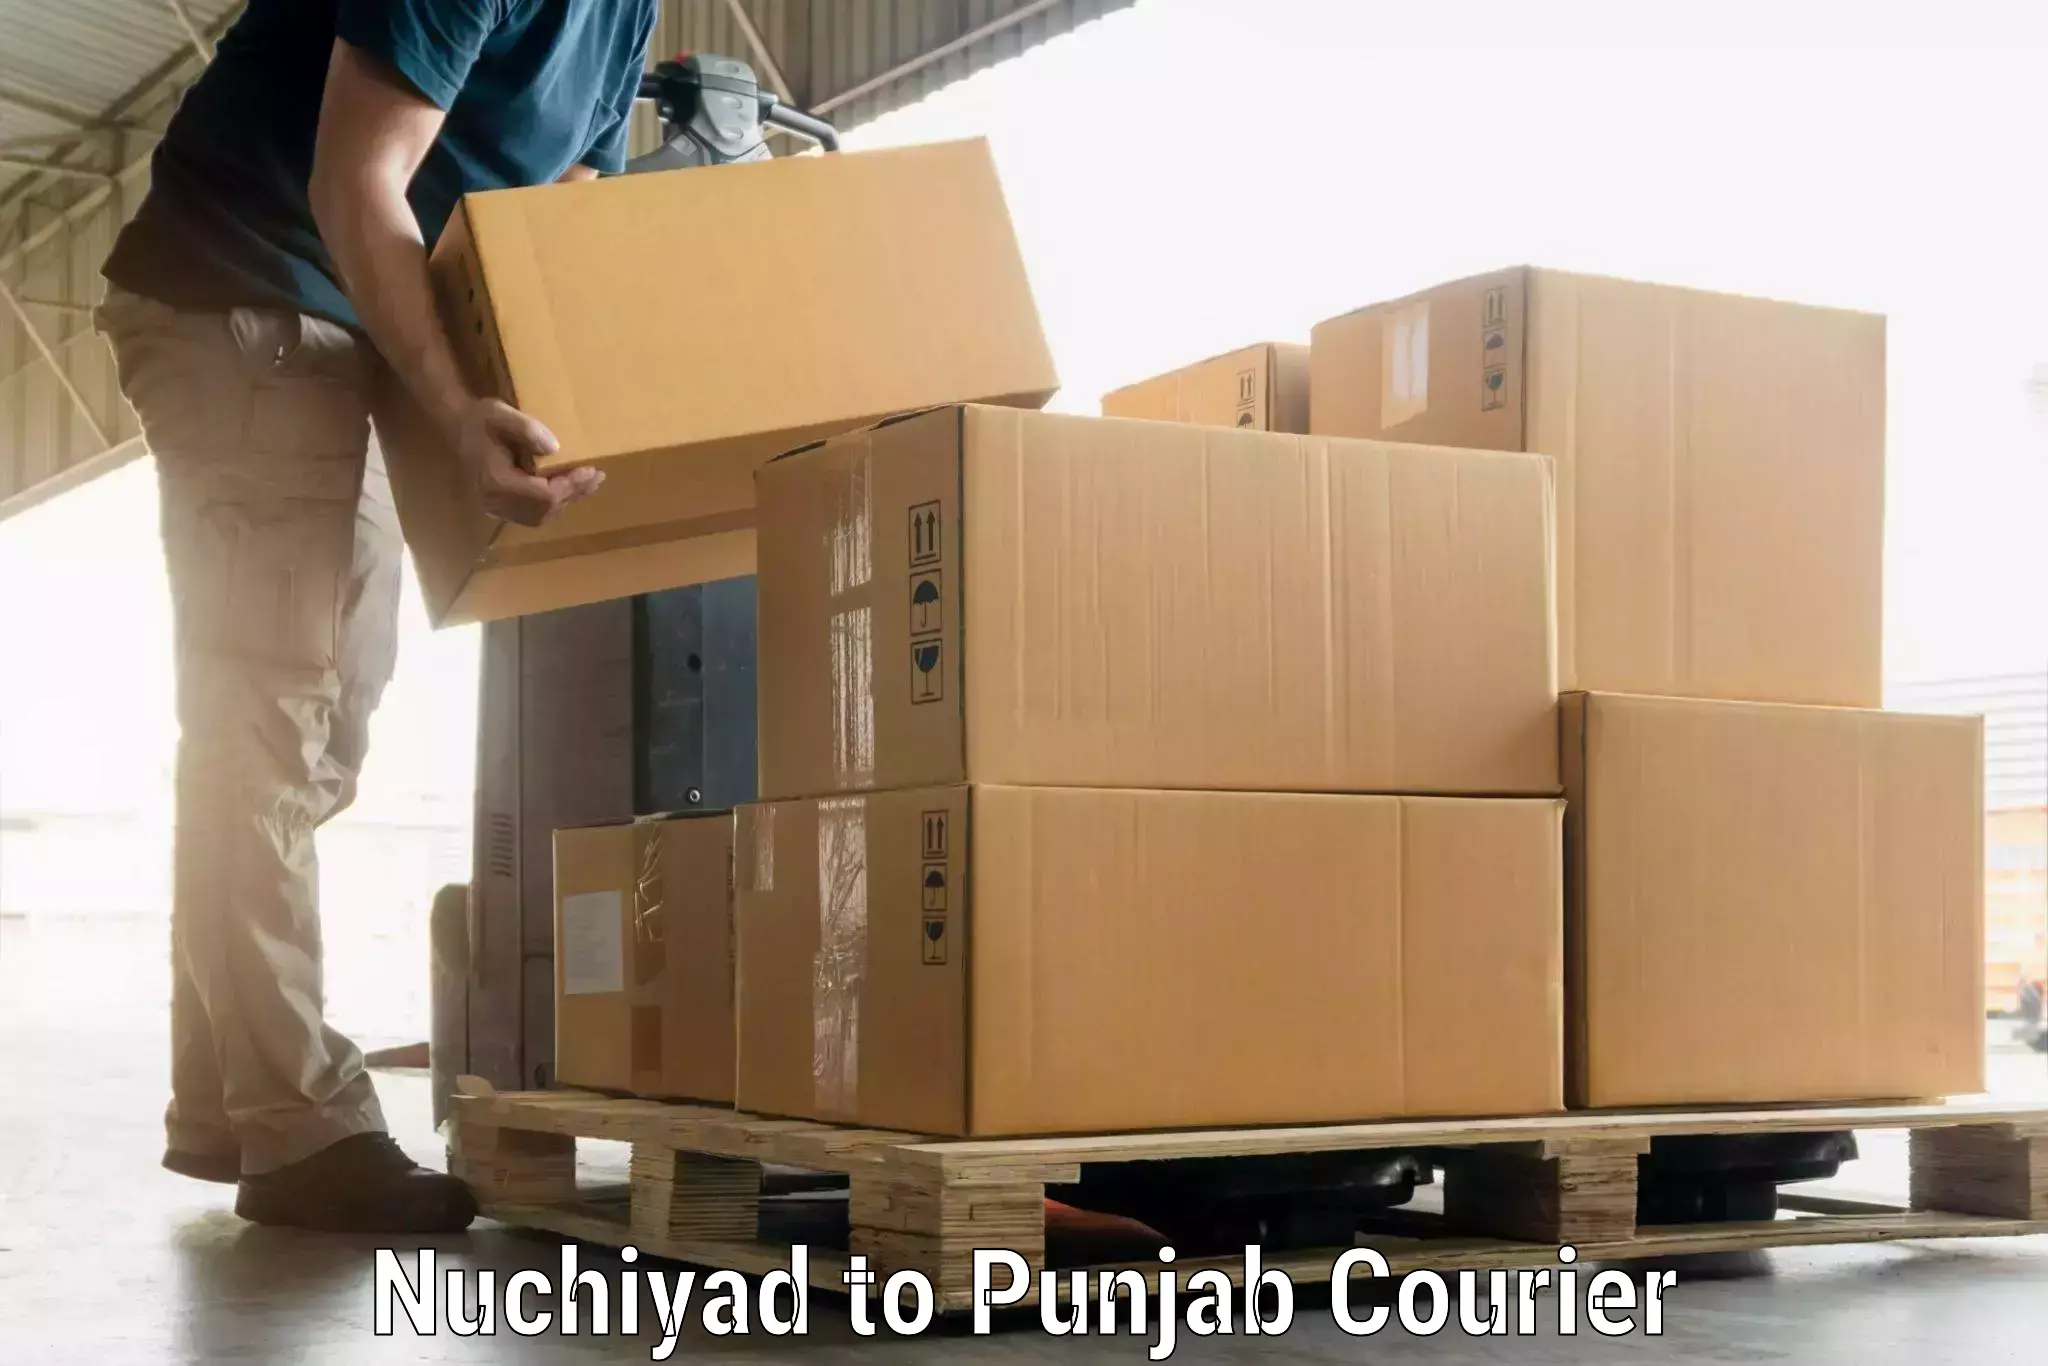 Luggage delivery app Nuchiyad to Batala